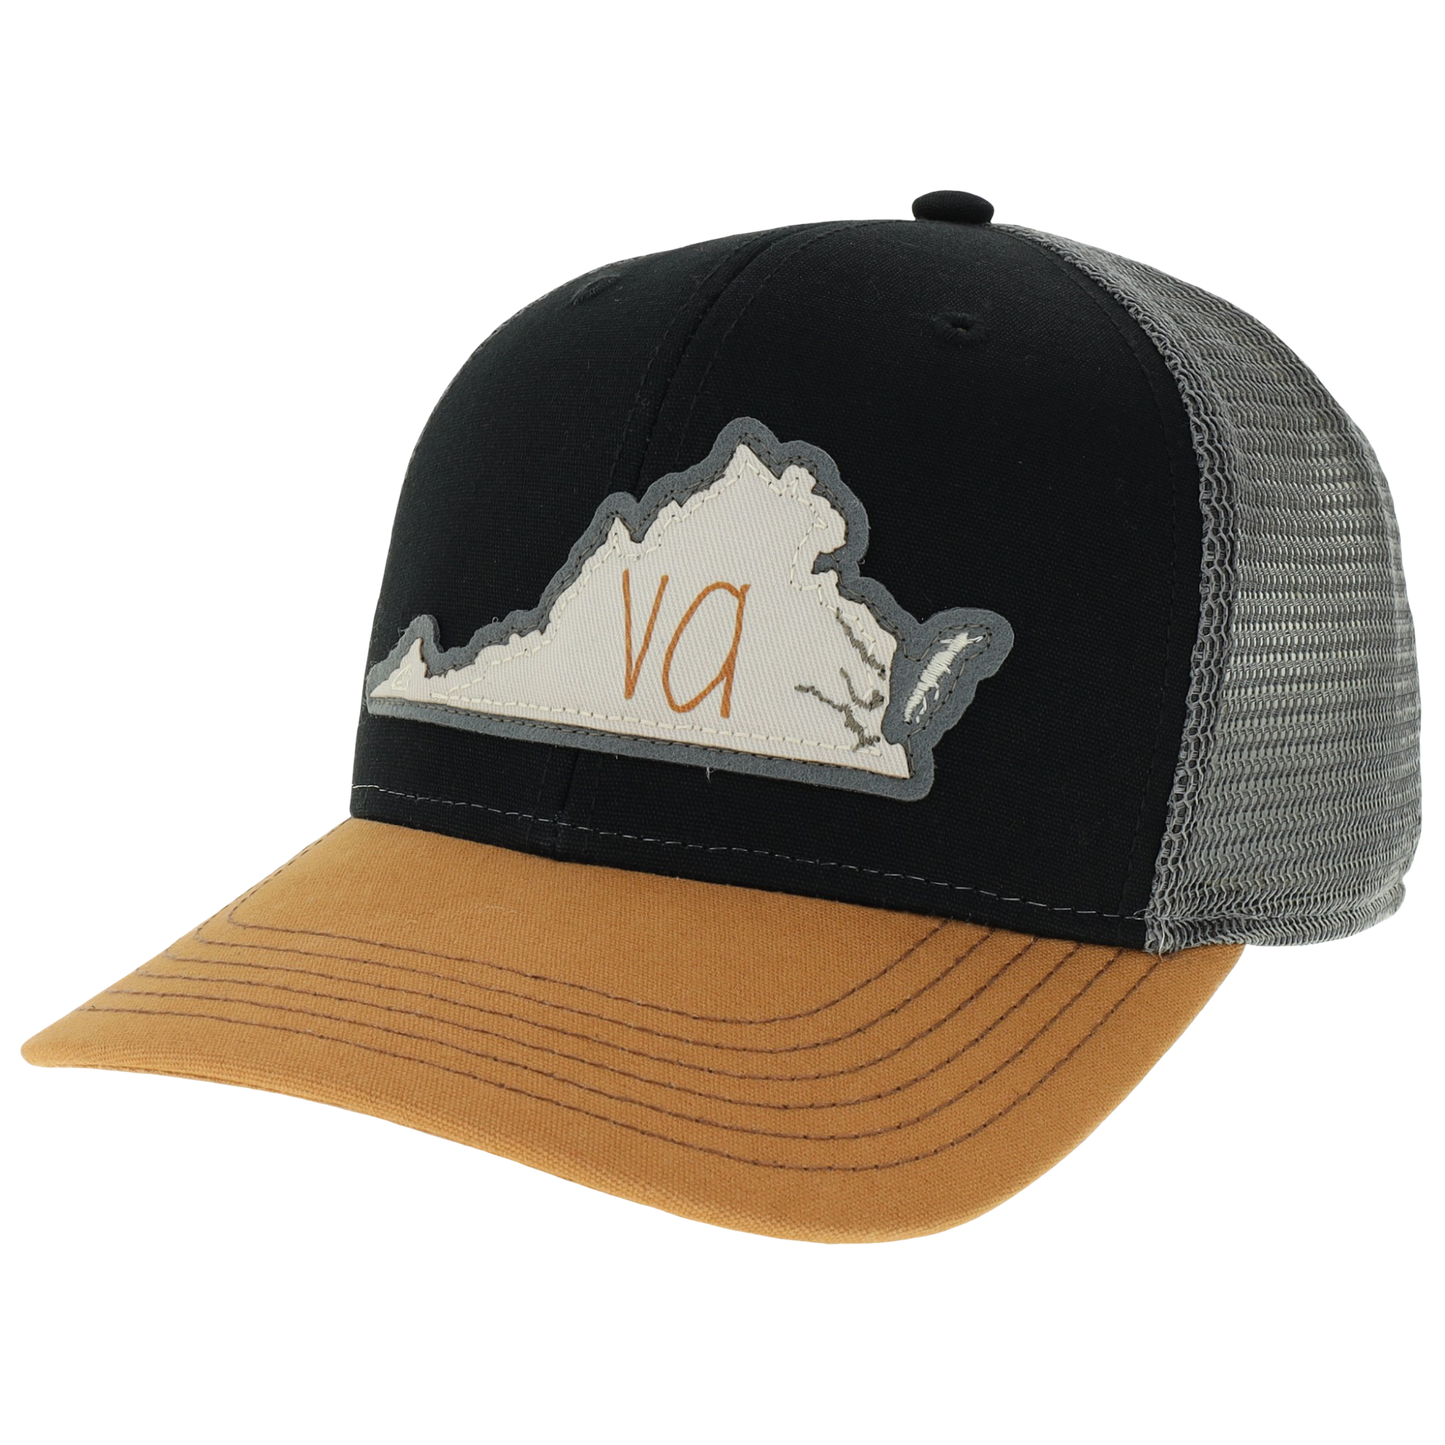 Virginia Mid-Pro Trucker Hat in Black/Caramel/Dark Grey